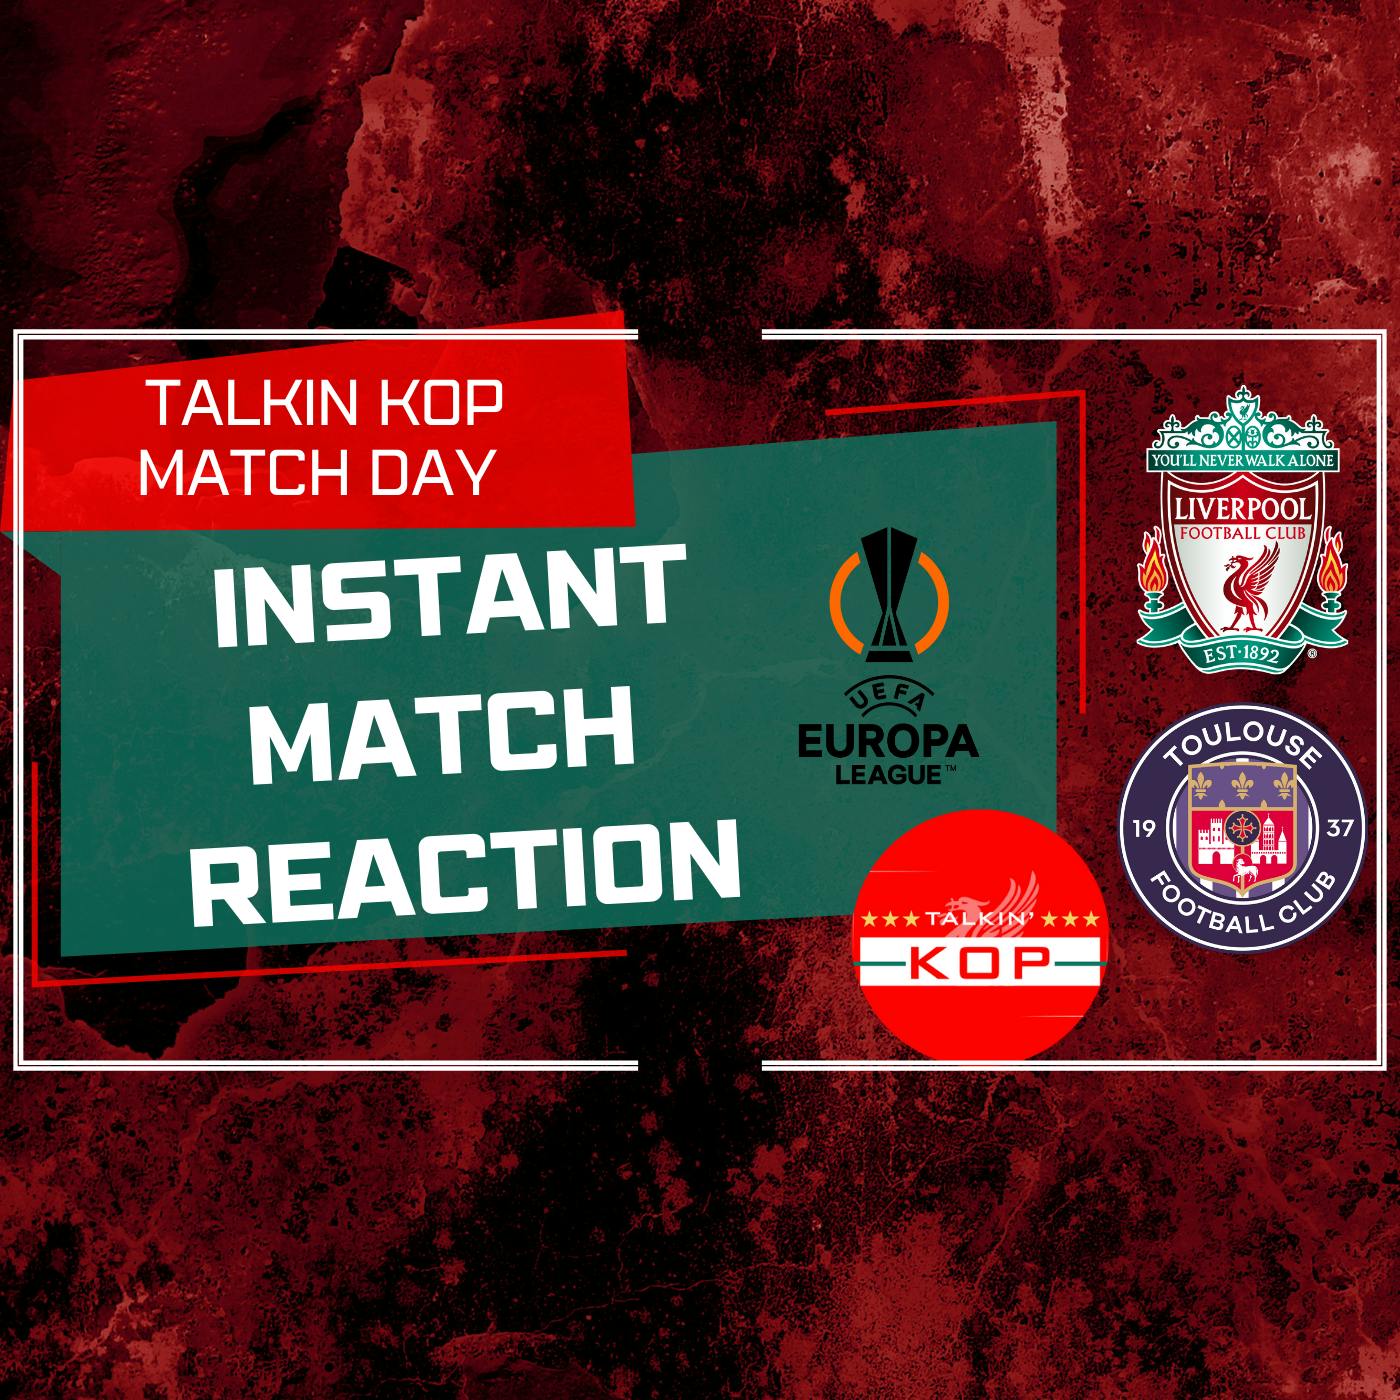 Liverpool 5 Toulouse 1 Reaction | Talkin Kop